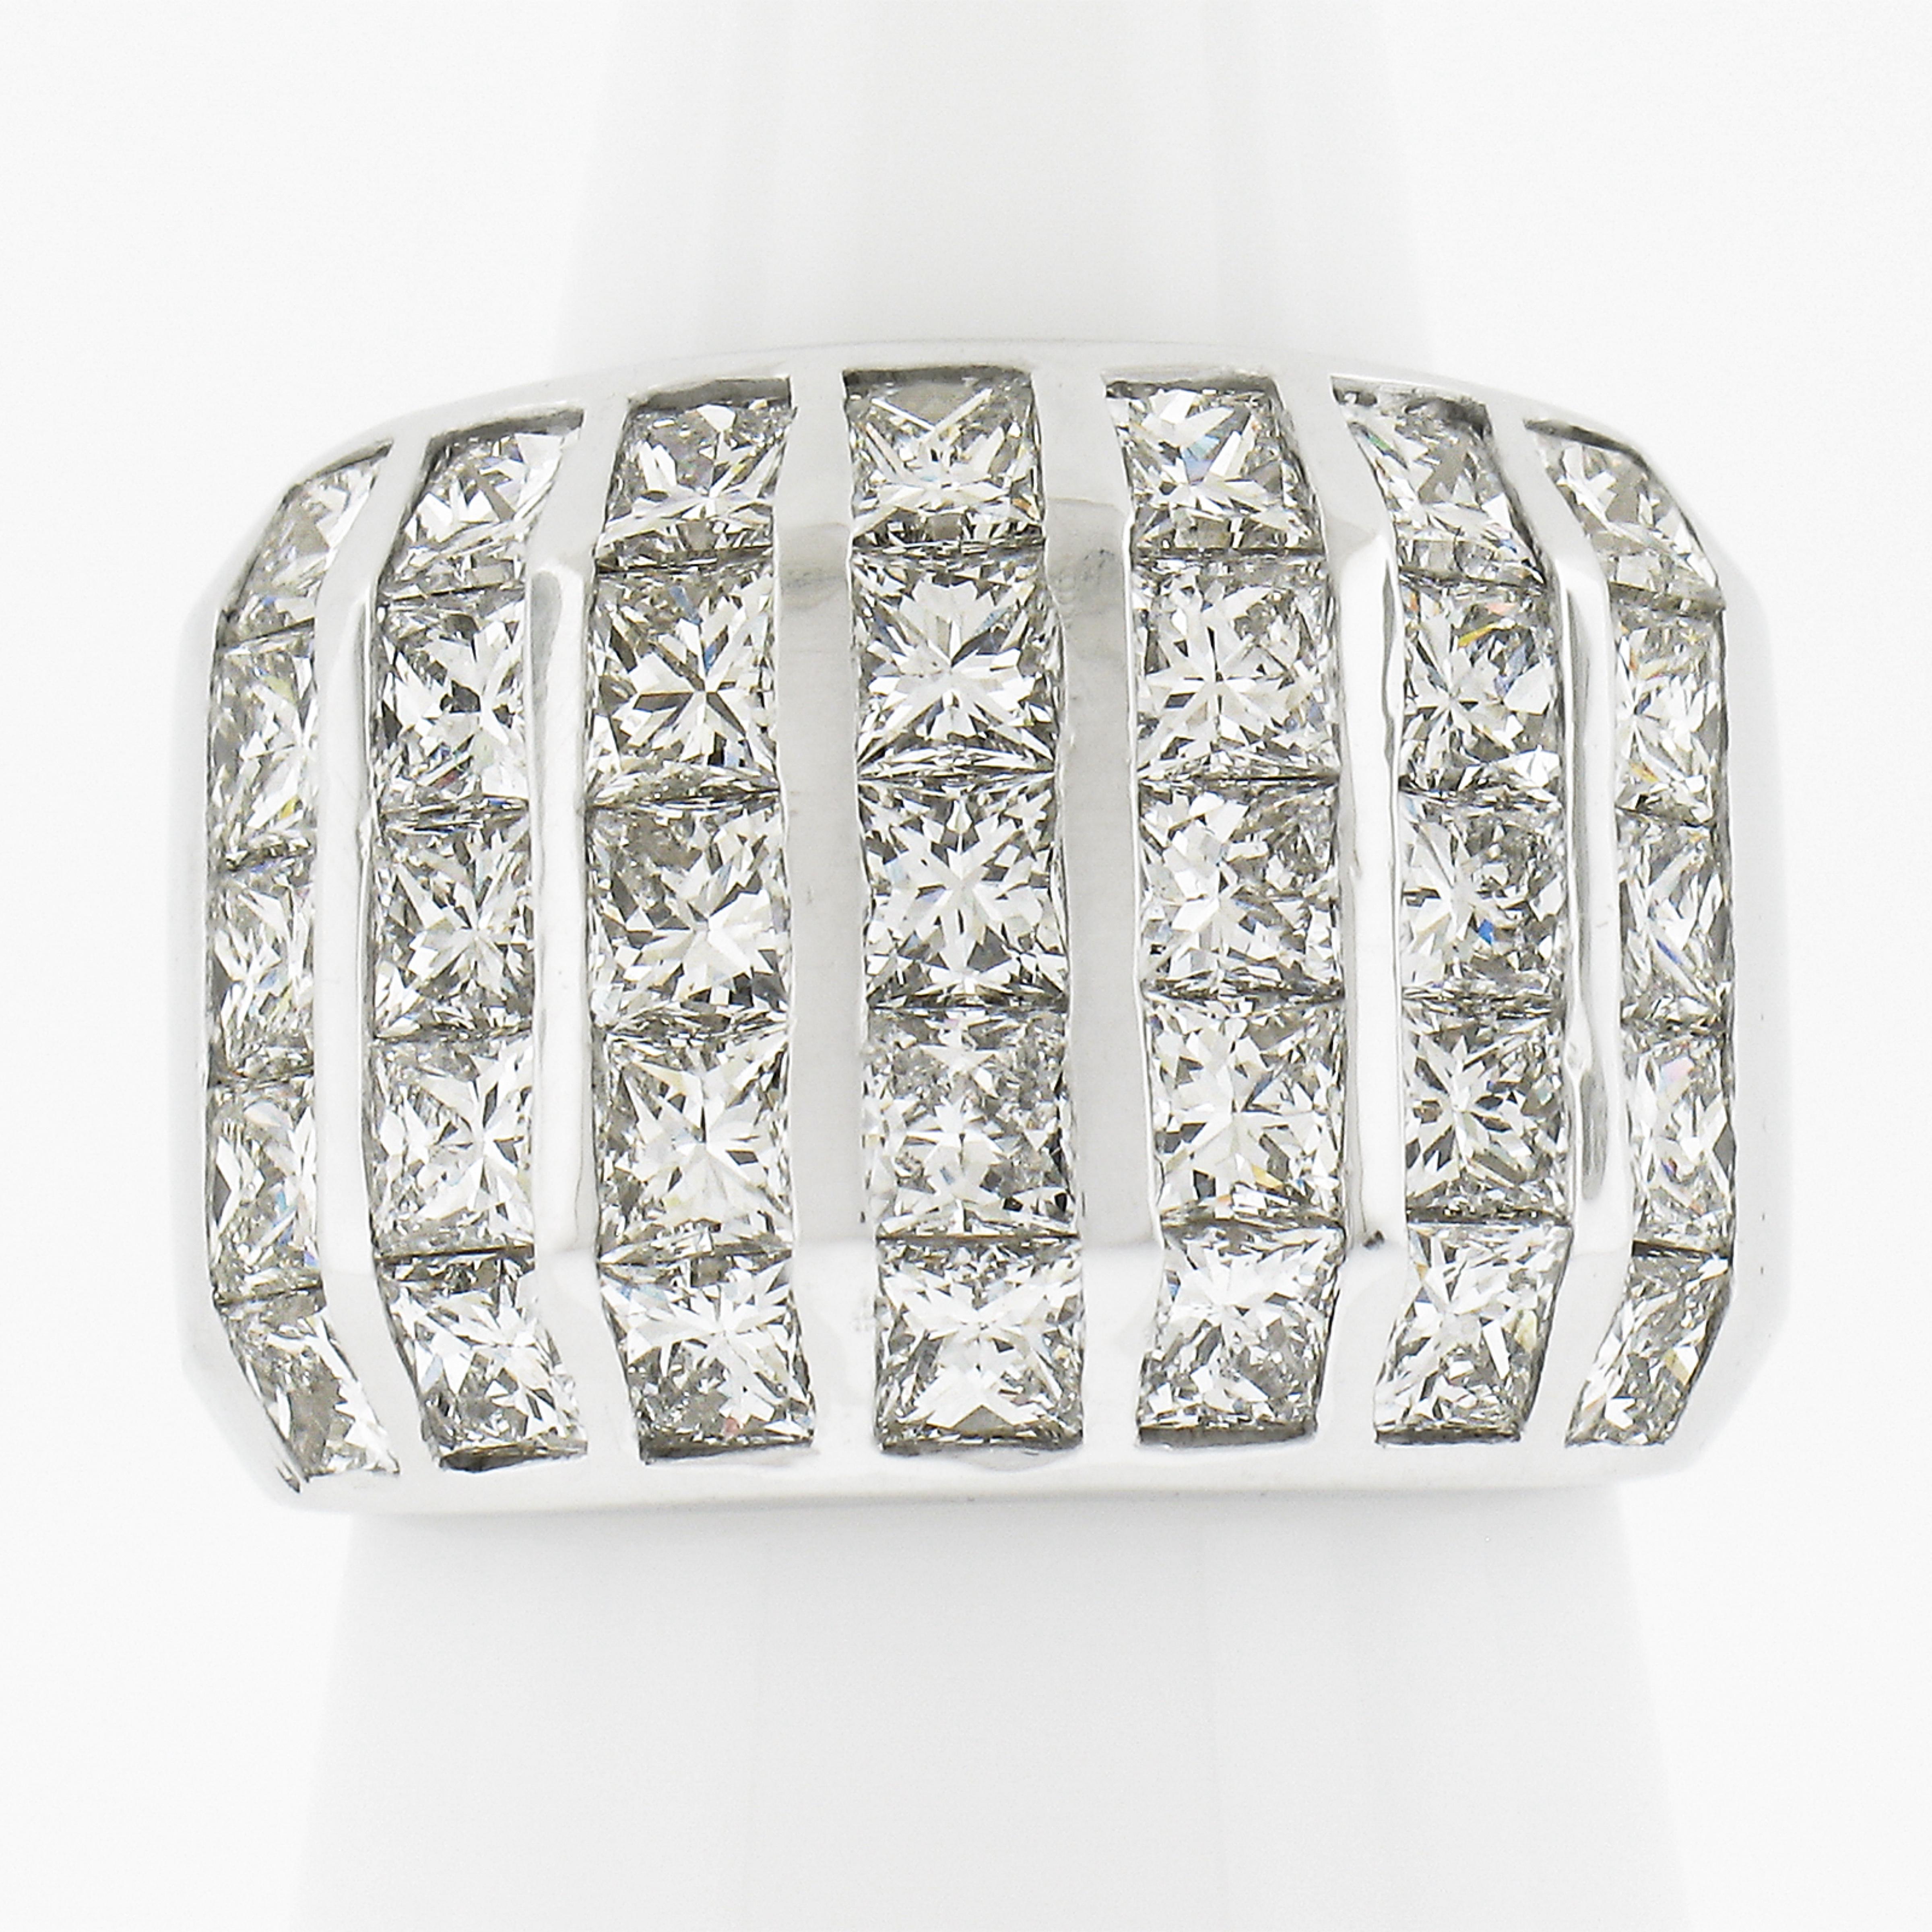 --Stein(e):--
(35) Natürliche echte Diamanten - Prinzessinnenschliff - Kanalfassung - Reinheit VVS1-VS2 - Farbe H-J - 4,75ctw (ca.)
Gesamtkaratgewicht:4,75 (ca.)

MATERIAL: Massives 18k Weißgold
Gewicht:18.07 Gramm
Ringgröße:5.5 (Passt auf einen